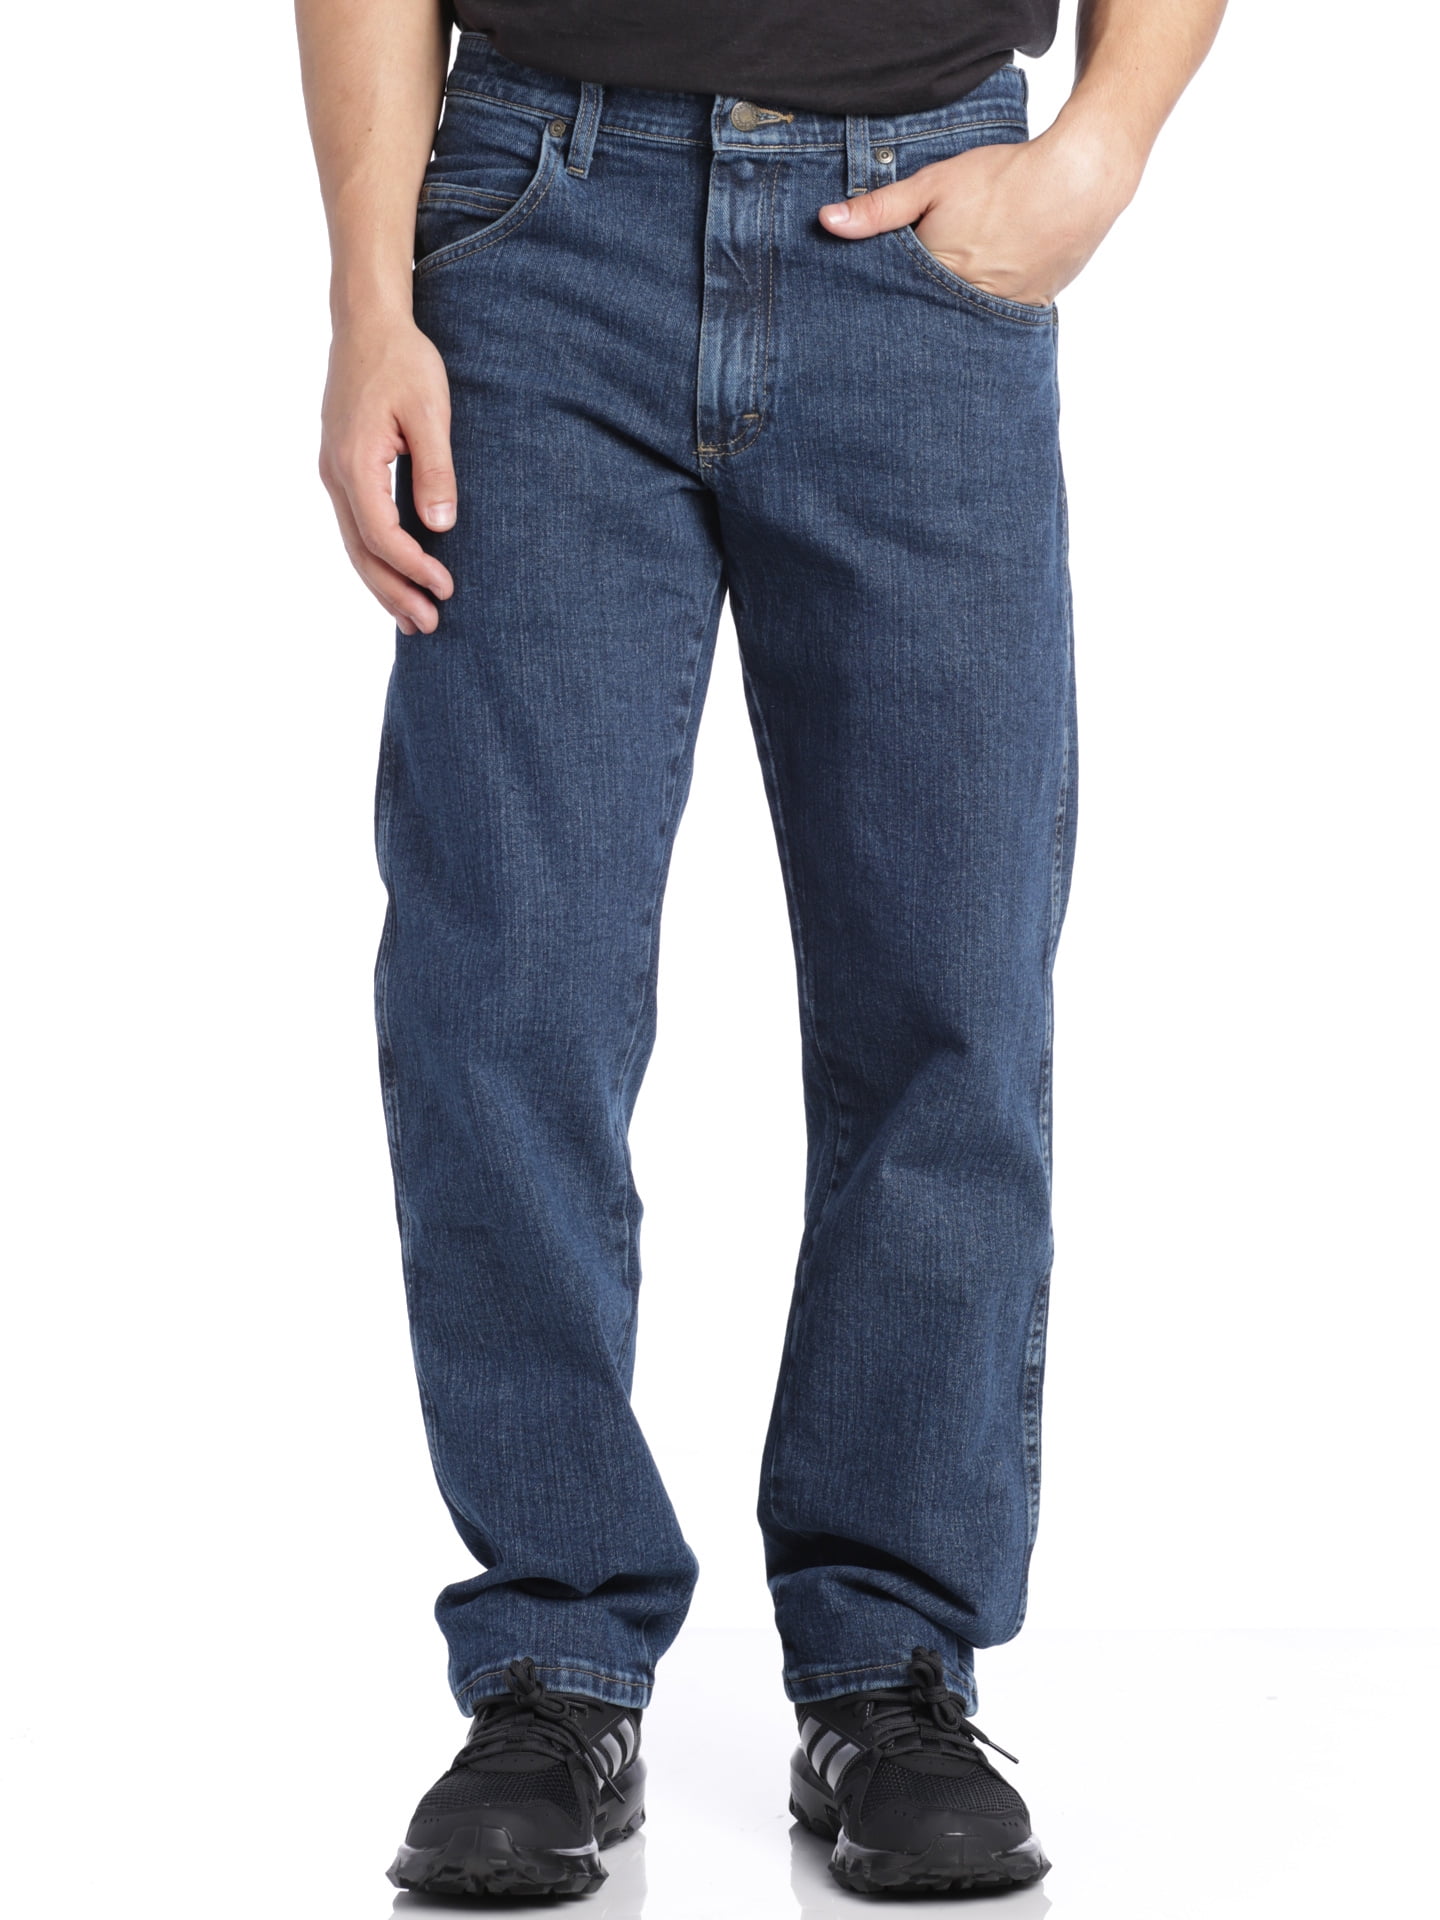 Wrangler Men's The Wrangler Rugged Relaxed Fit Jeans, Medium Stone, 42X30 -  